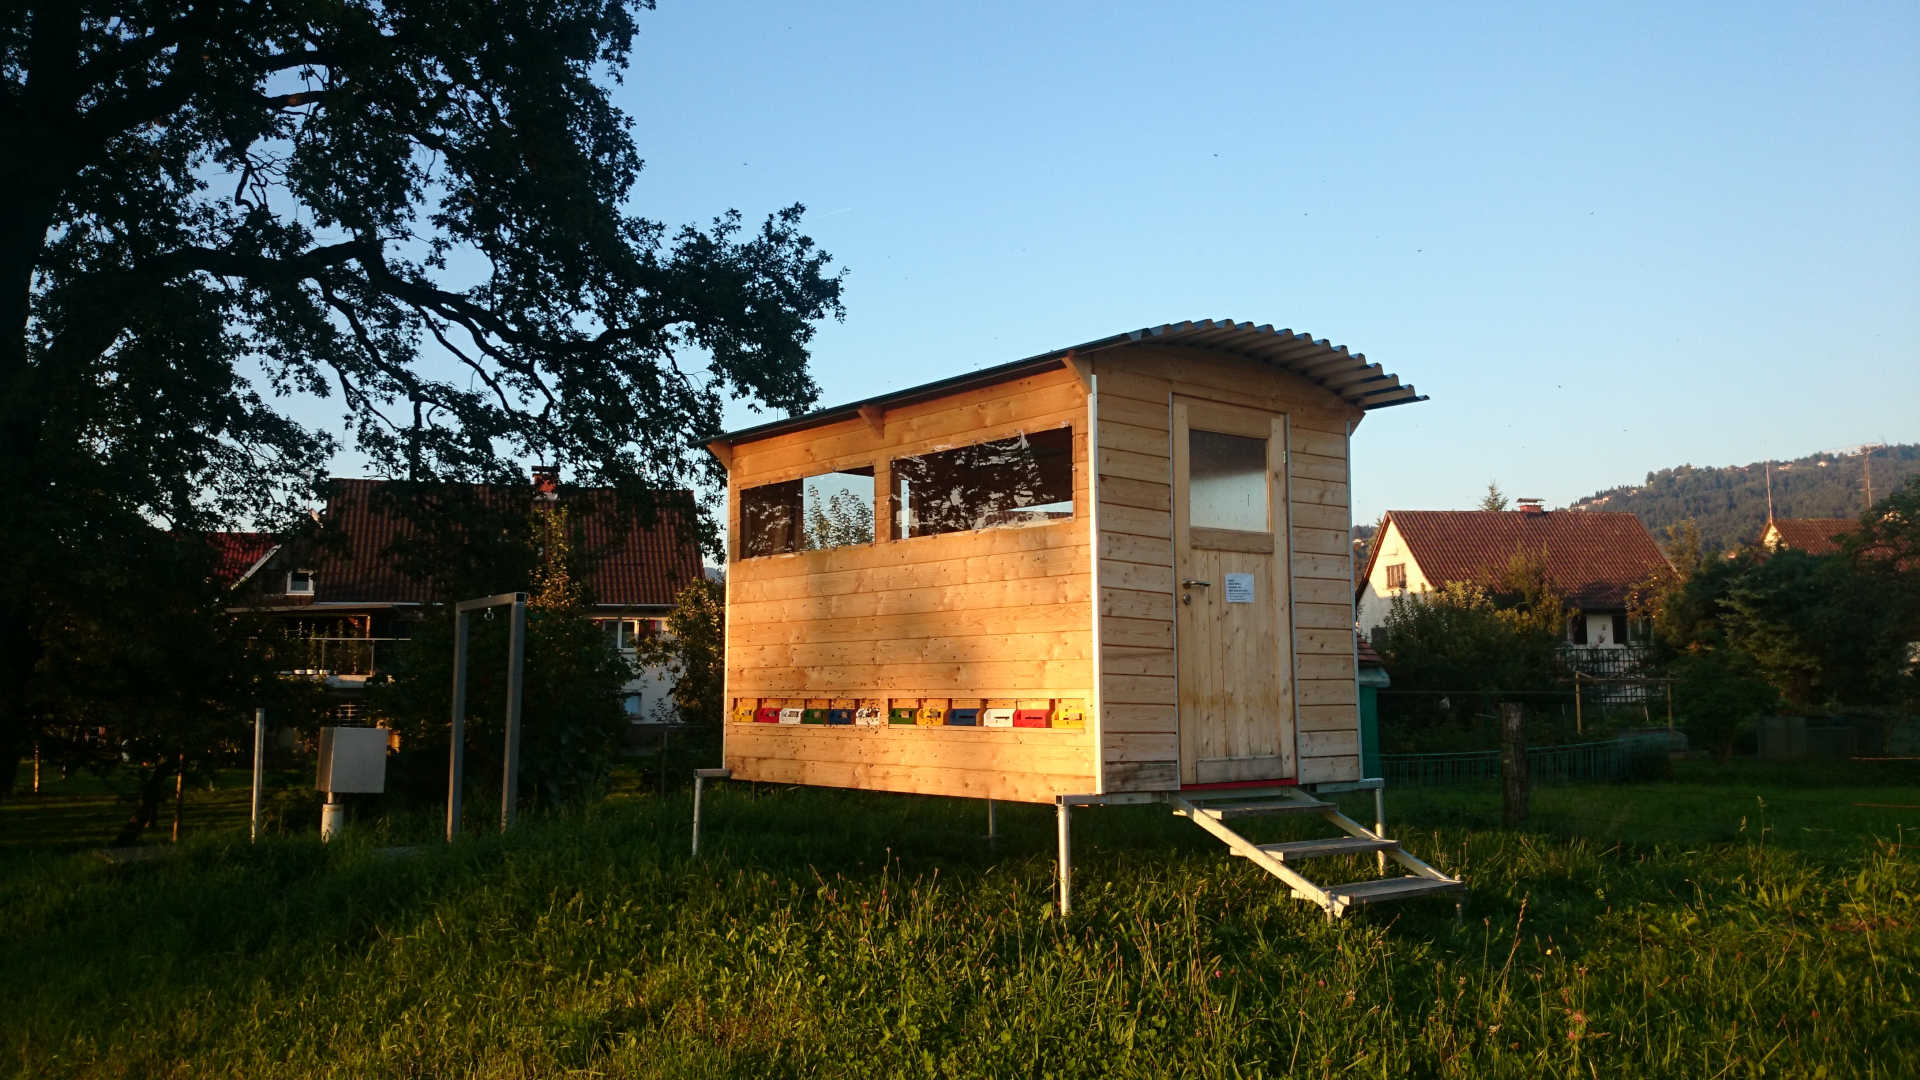 BeeMobil - Das mobile Bienenhaus zum Wandern mit 13 Bienenvölker.